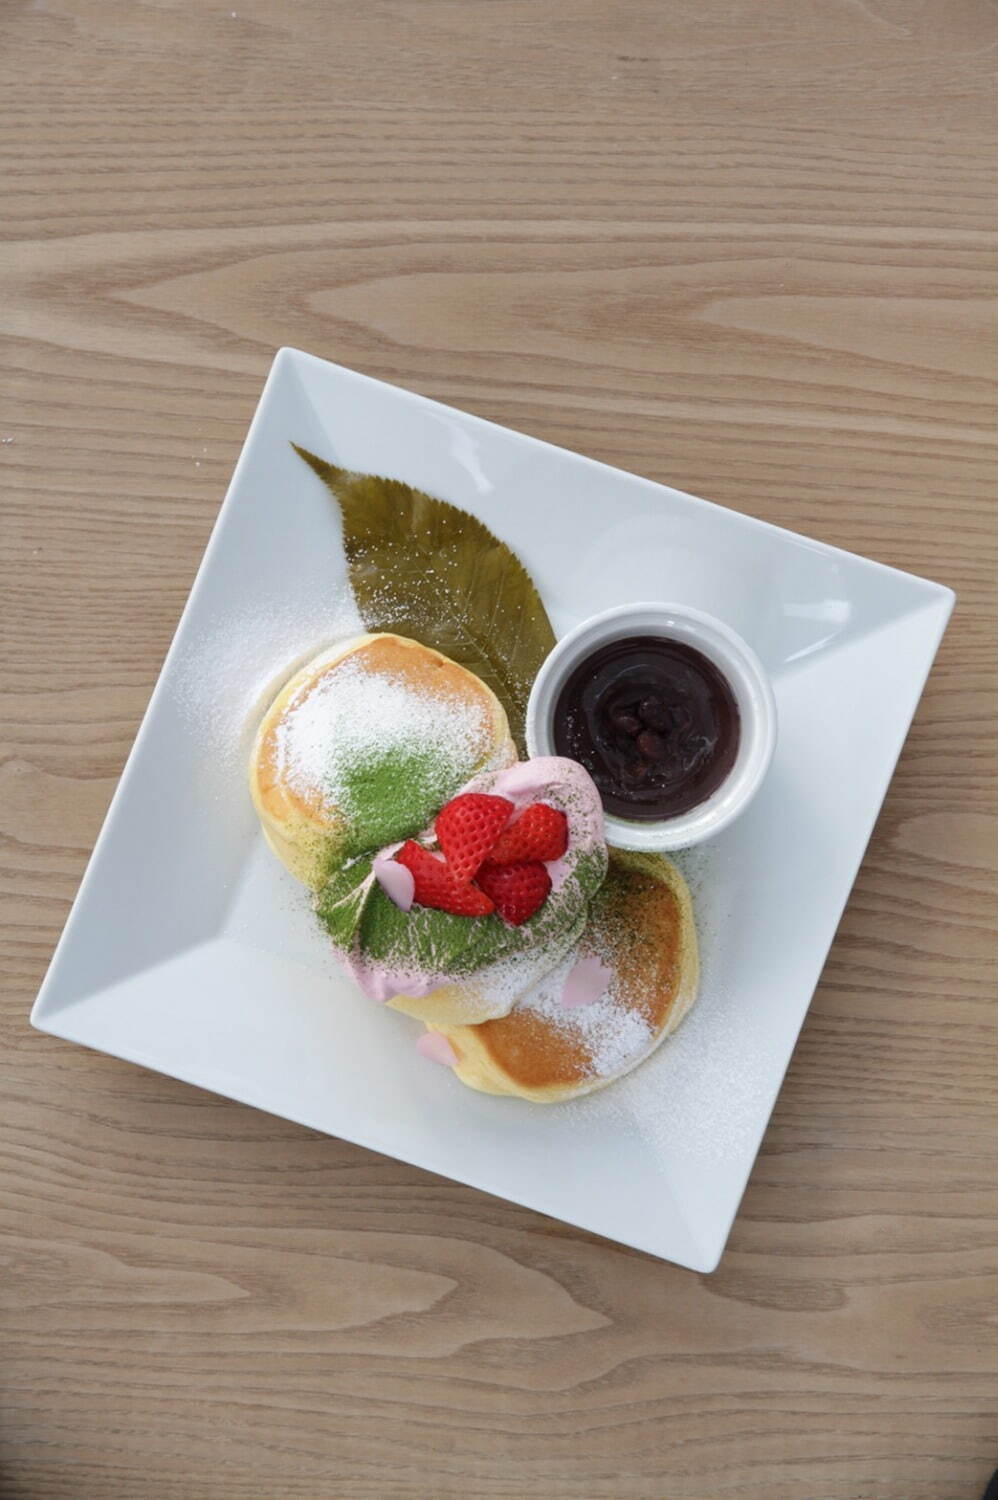 「幸せのパンケーキ」春限定“桜”パンケーキ、桜香るホイップクリームとあんこ、苺を乗せて 画像2